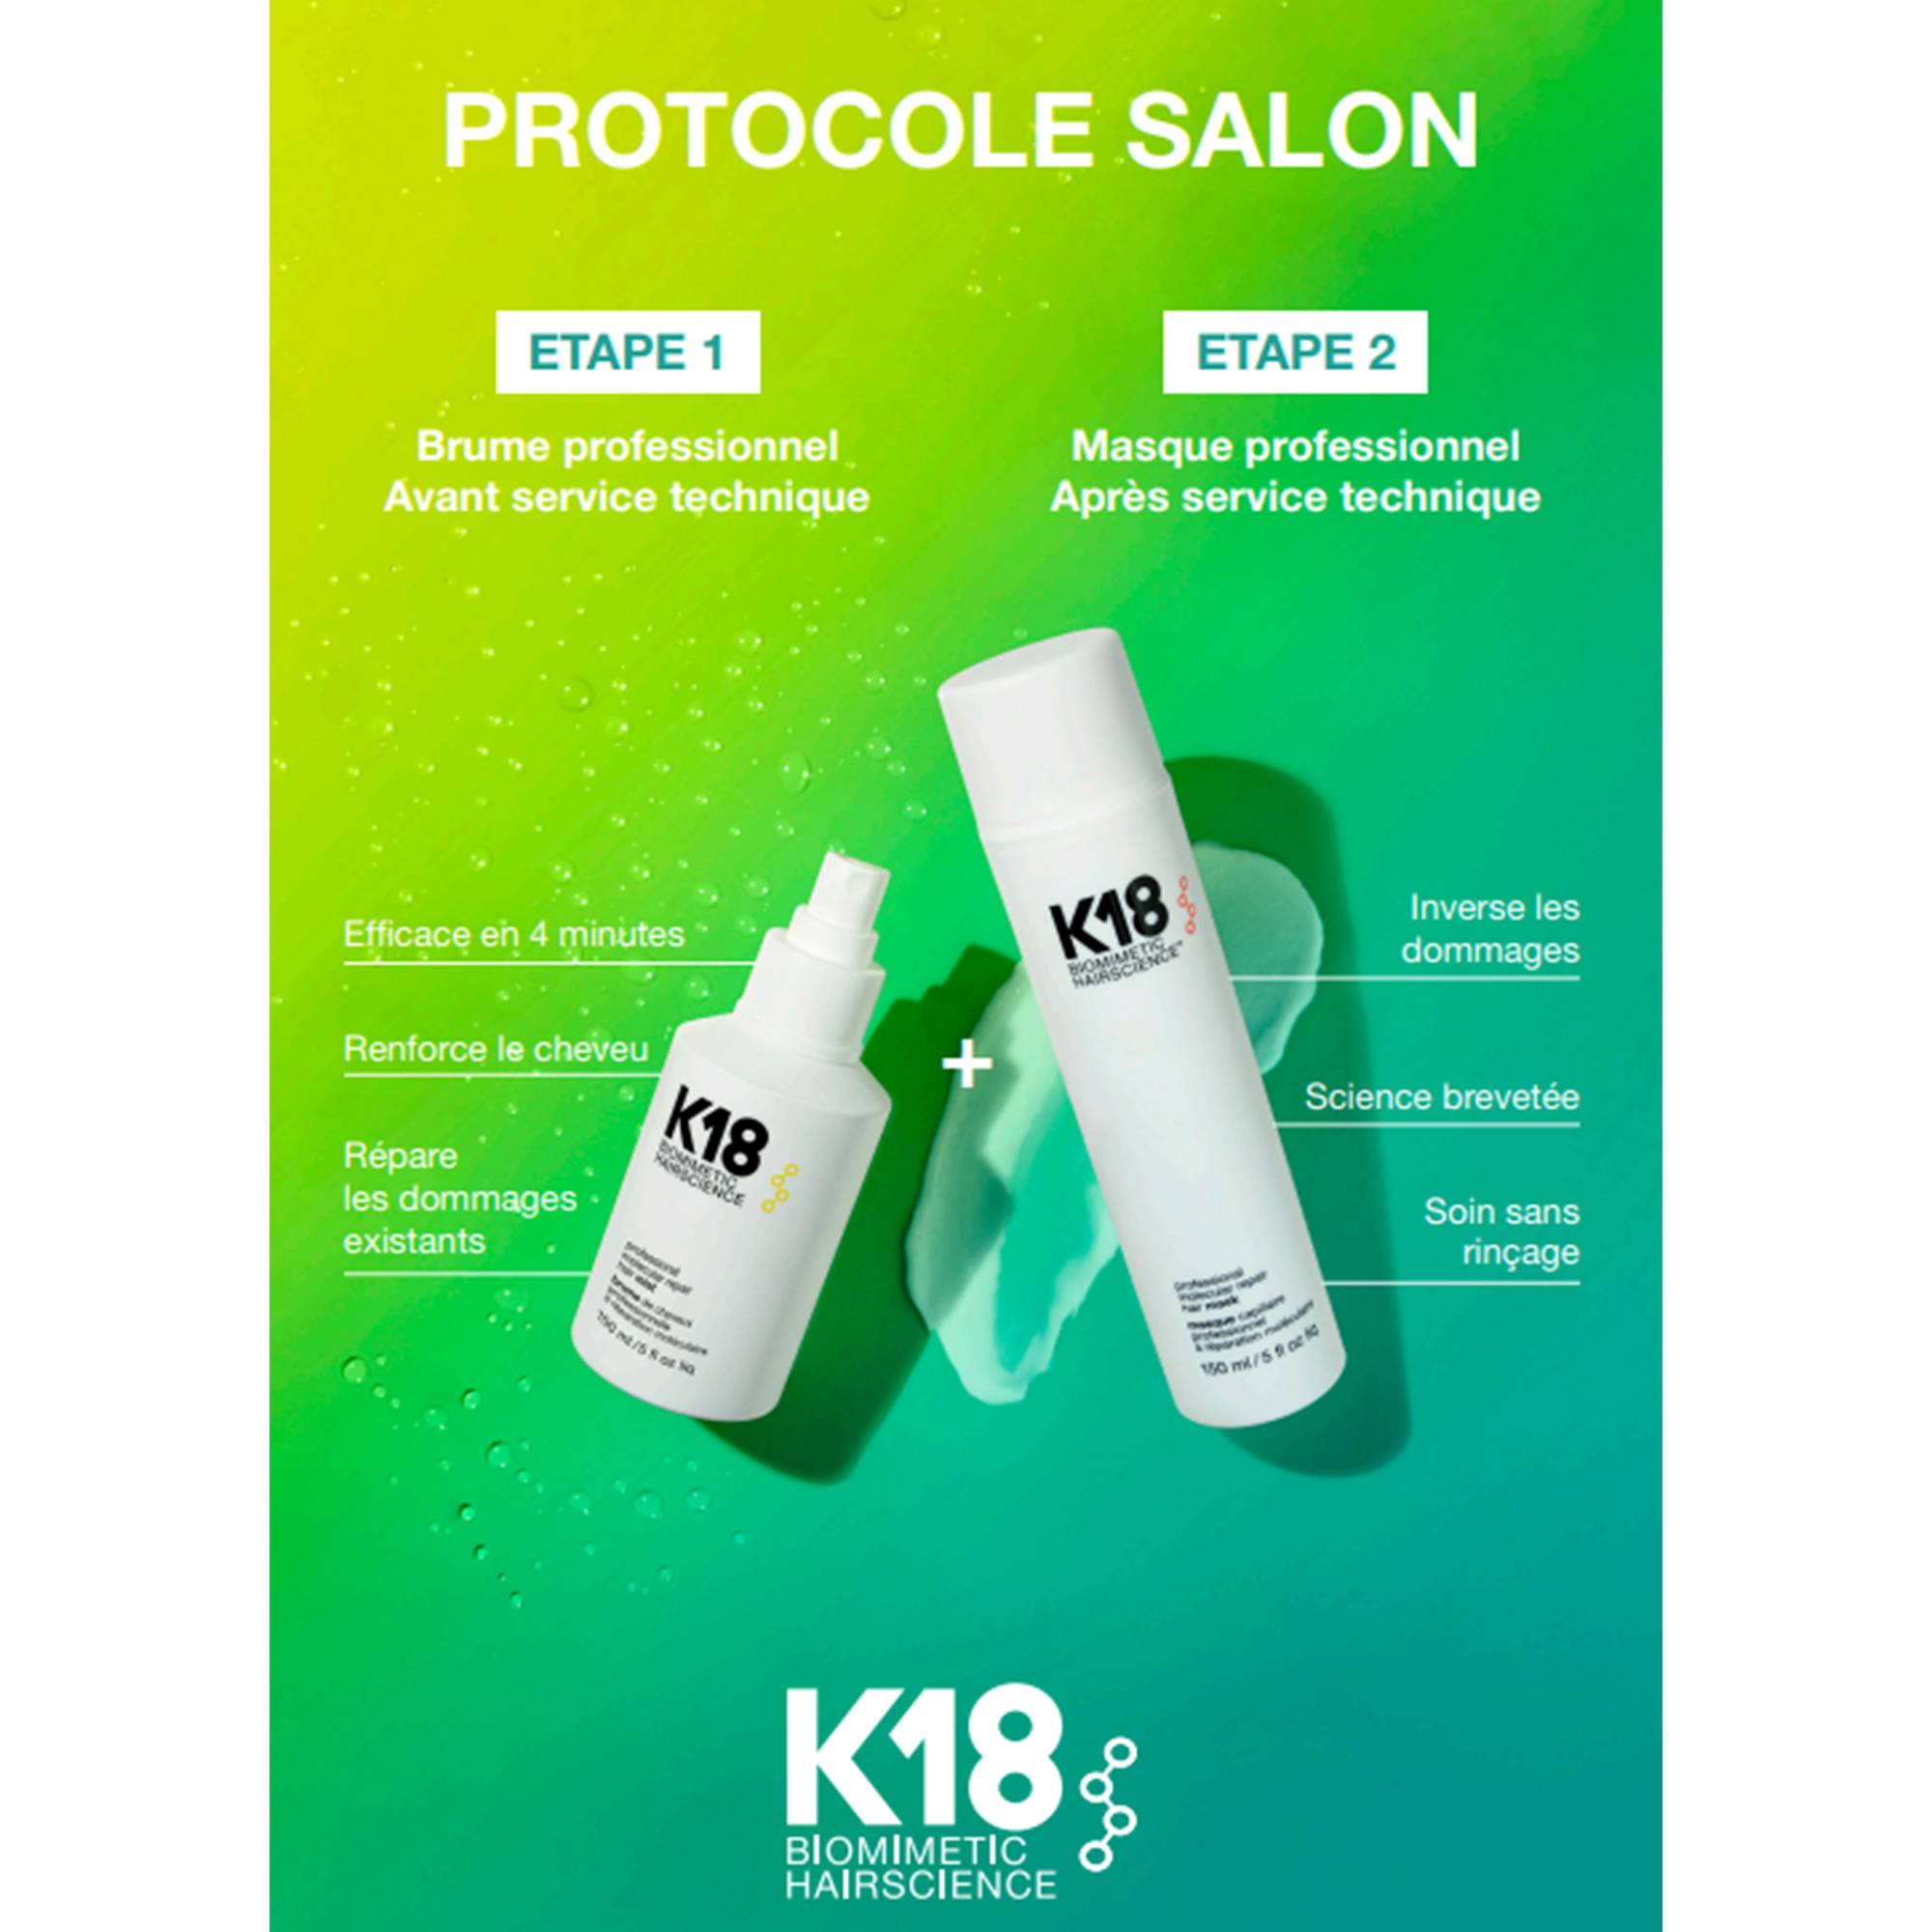 Masque professionnel réparation moléculaire Hair Mask de la marque K18 Biomimetic HairScience Contenance 150ml - 3